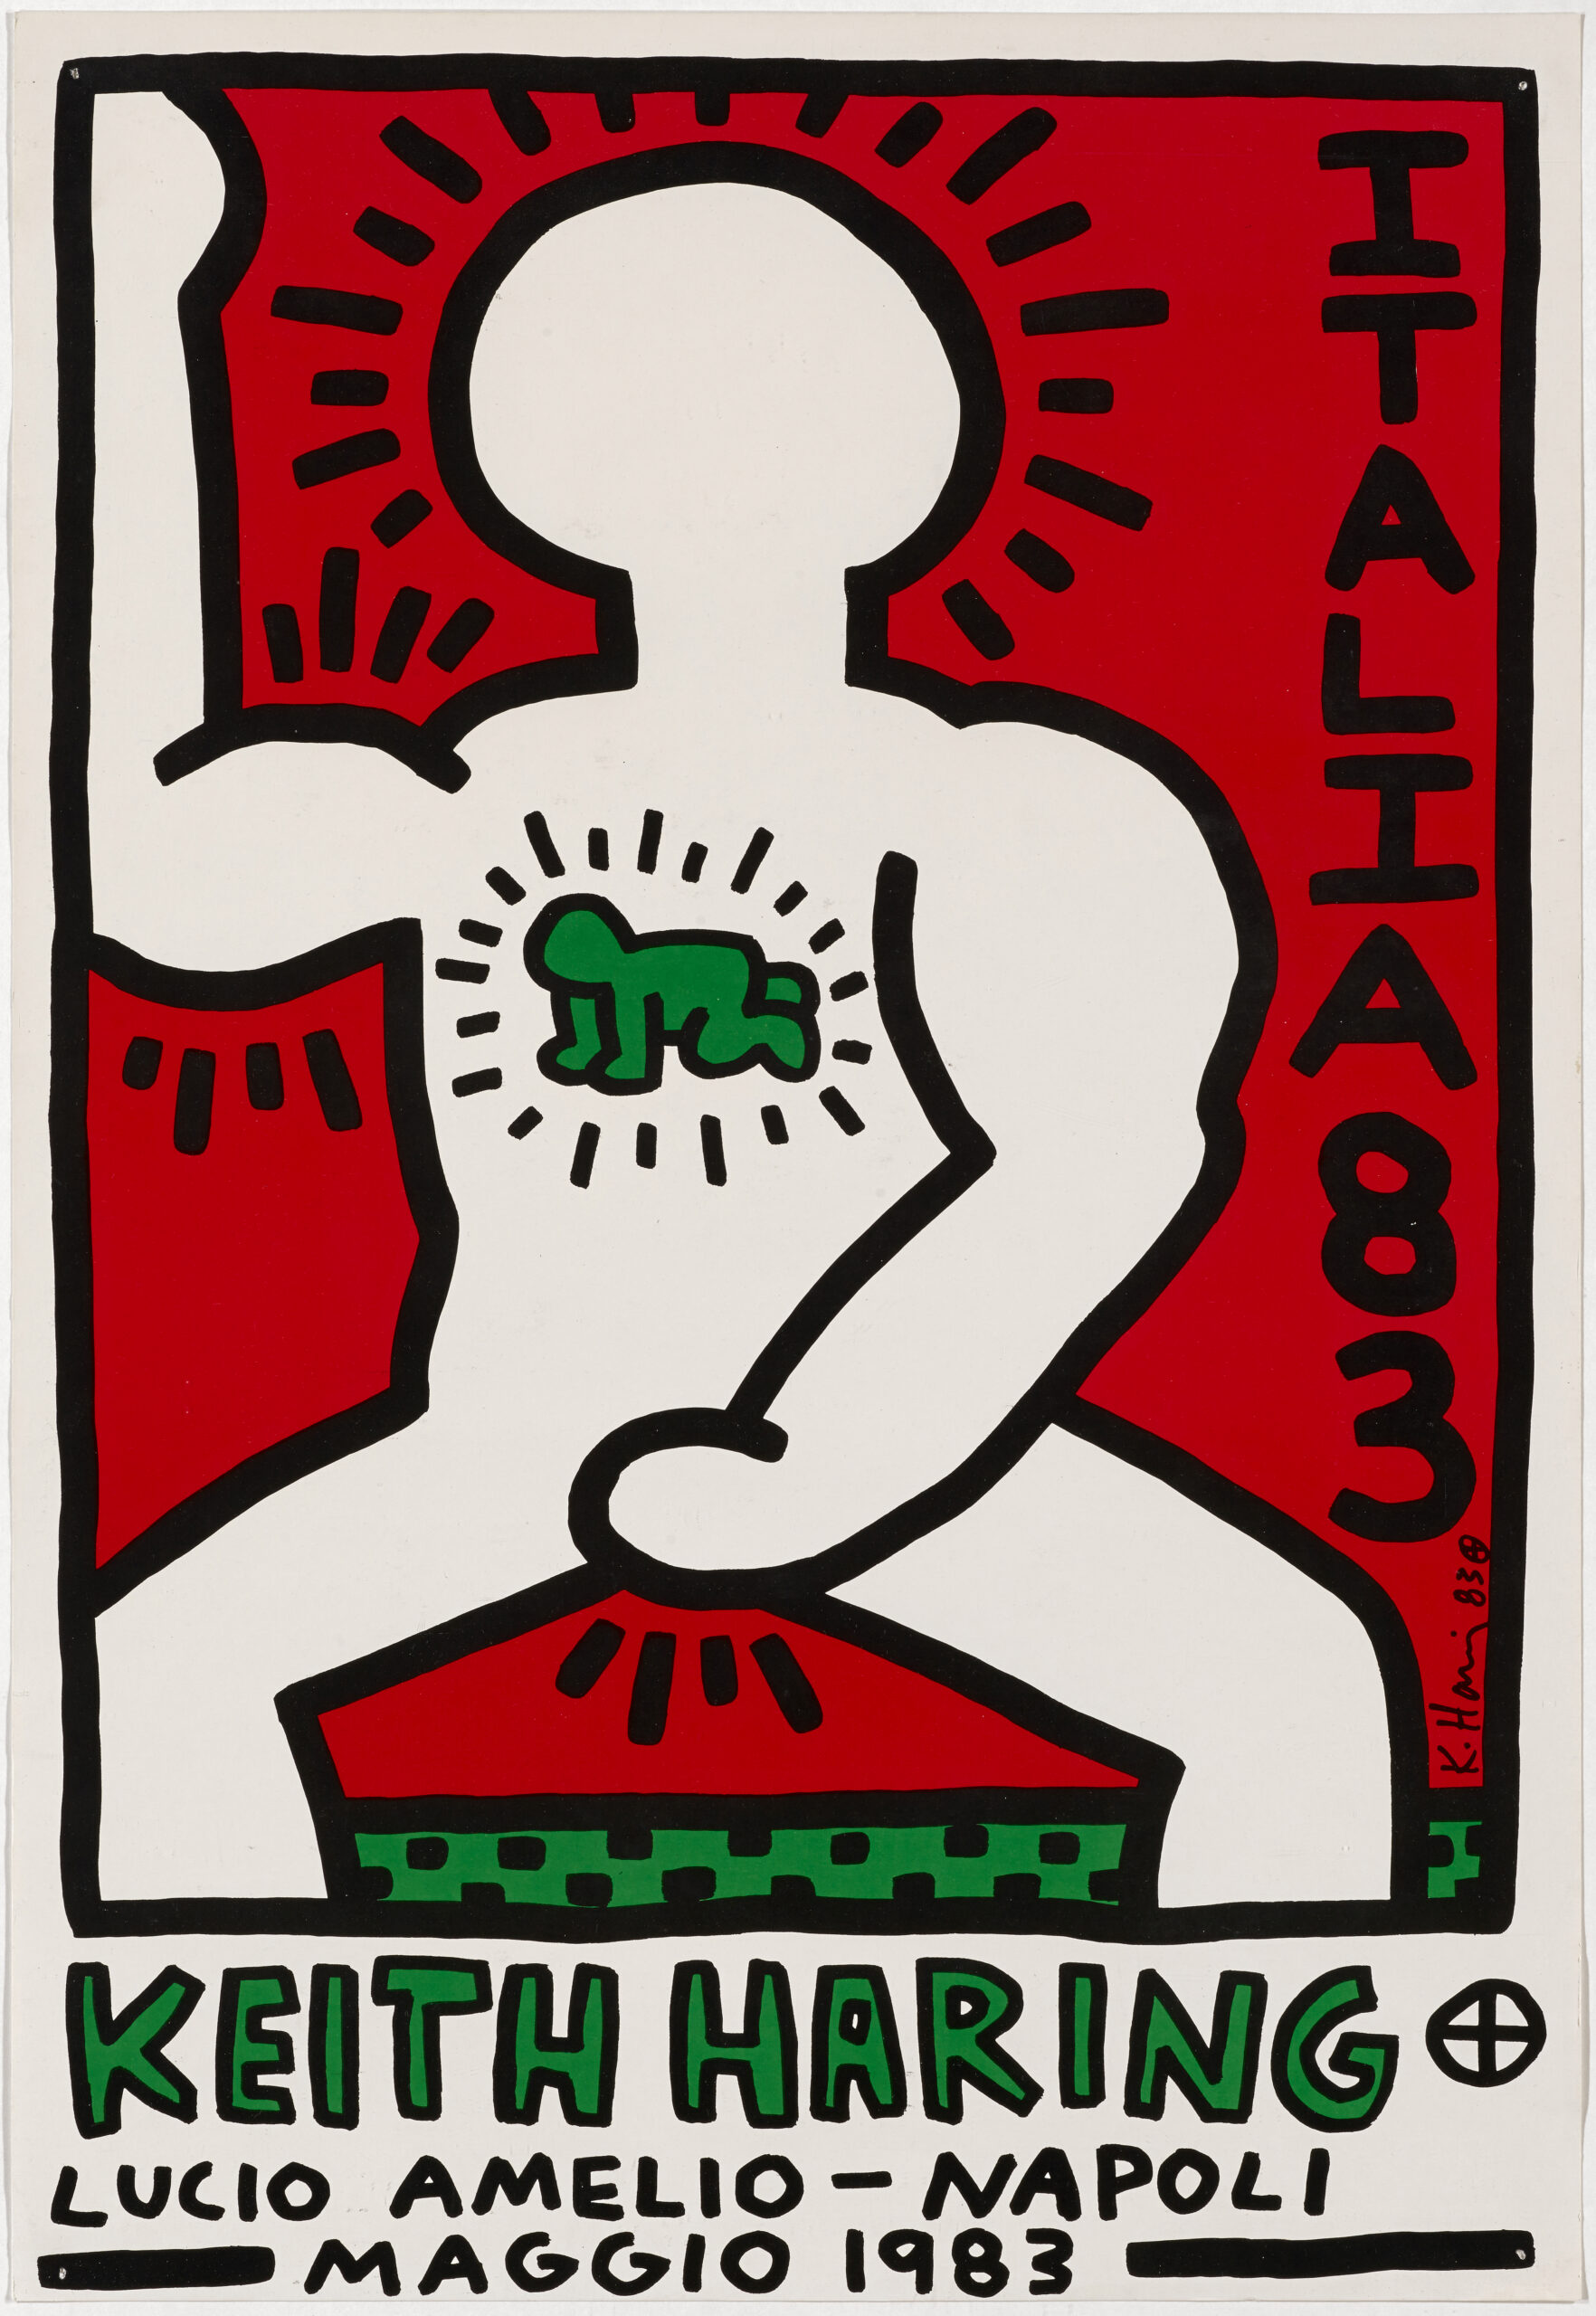 «Message! Italia 83» des amerikanischen Künstlers Keith Haring in der Kolumne von Naomi Gregoris im FRIDA Magazin